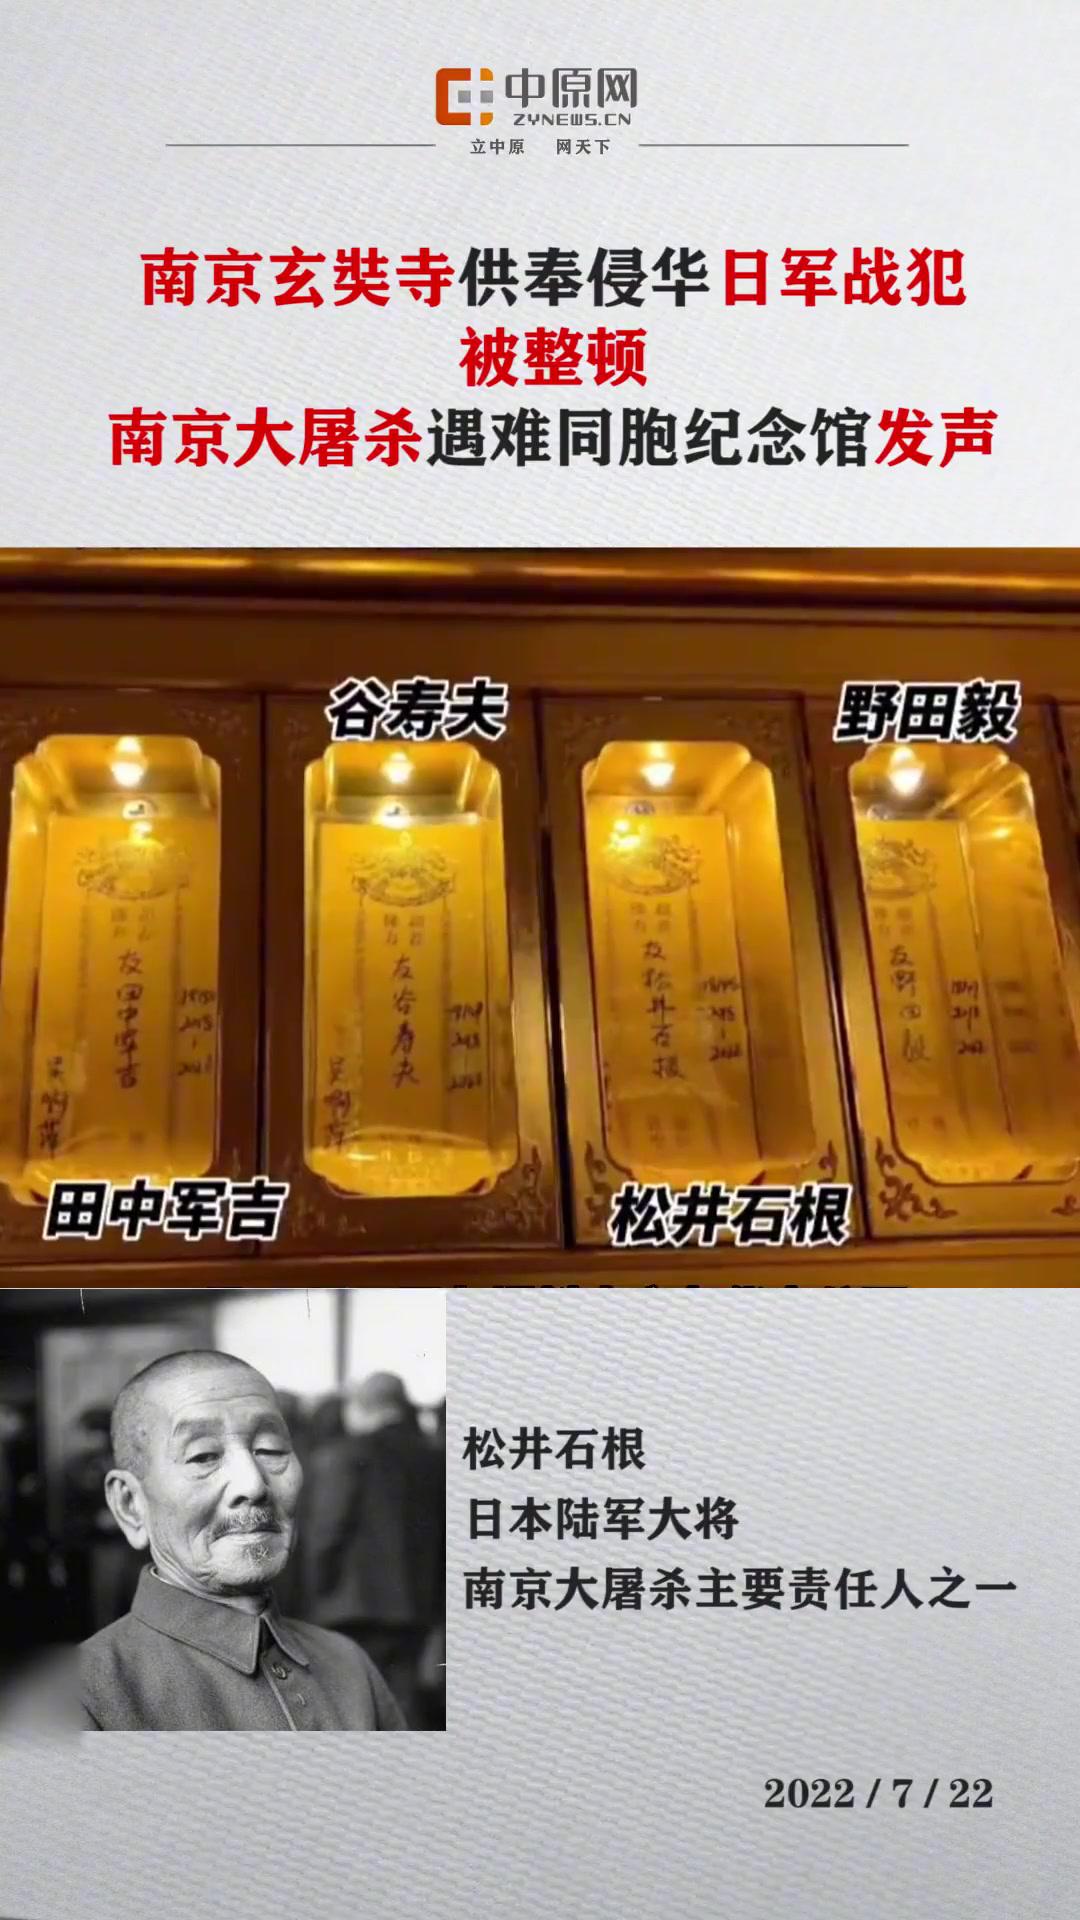 近日,有网友发文表示,在南京九华山公园玄奘寺地藏殿内,一排长生牌位